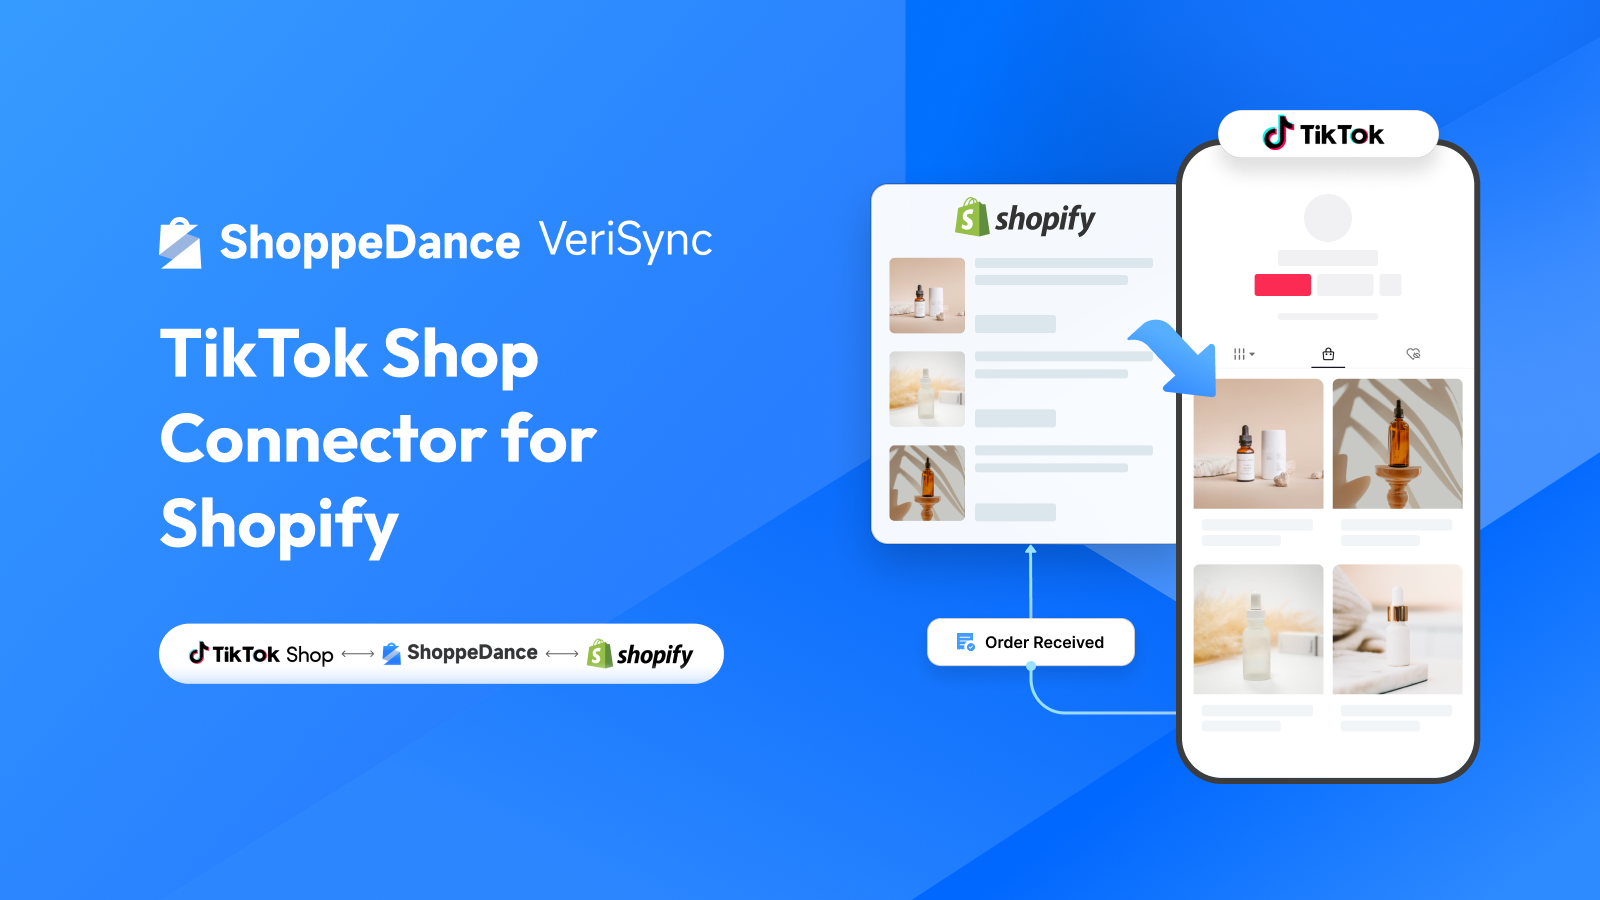 ShoppeDance VeriSync | TikTok Shop Connector for Shopify